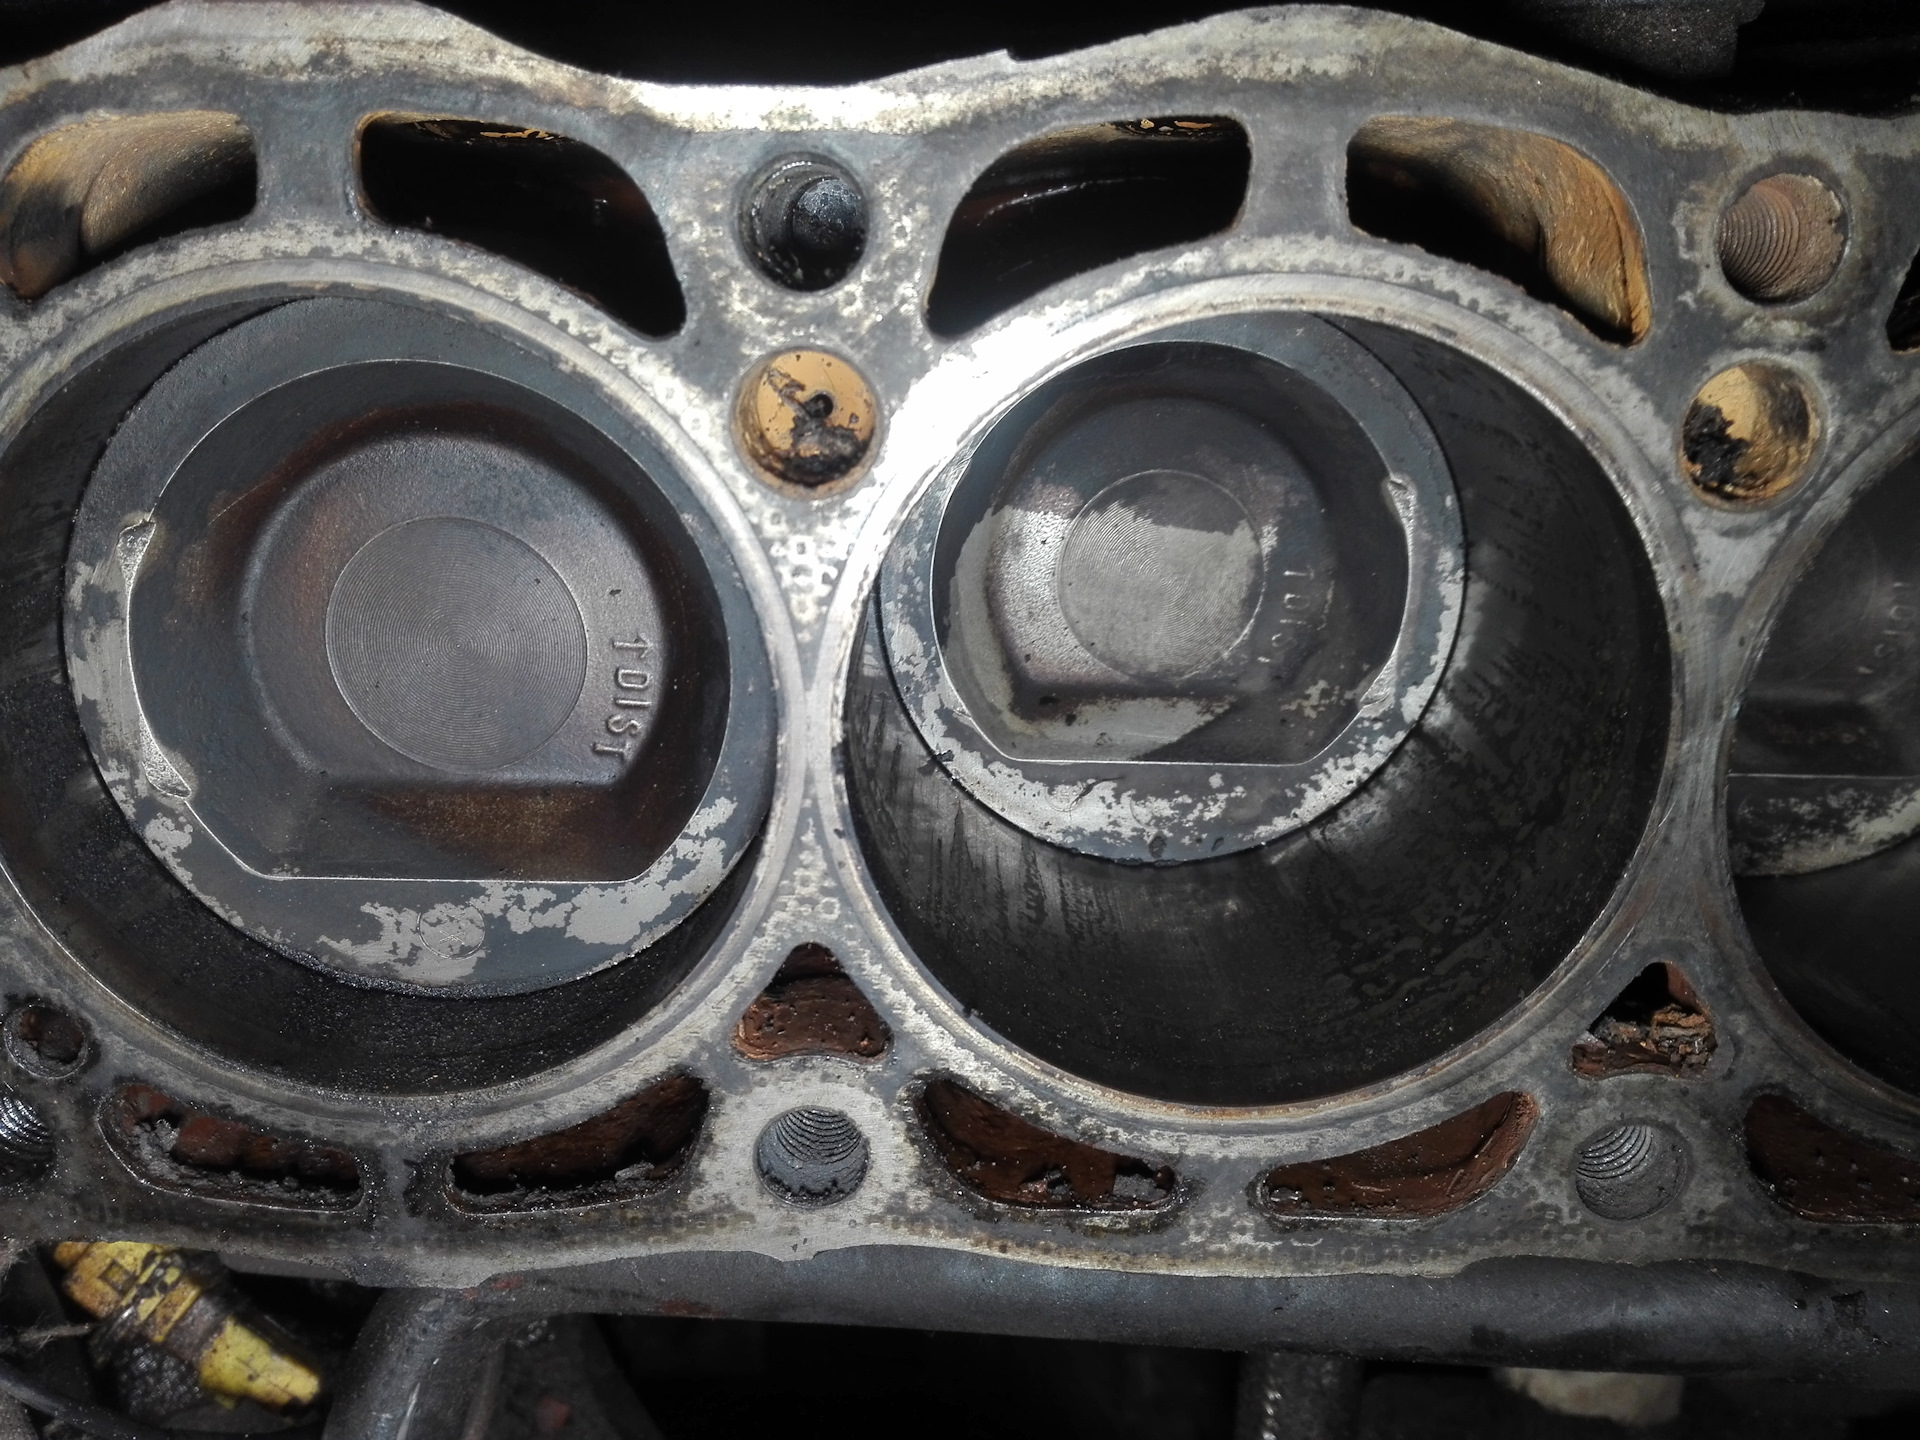 Почему гнет клапана. Загнуло клапана на Фольксваген поло 1,2. Гнет клапана x18xe. Opel Corsa d 1.4 гнет ли клапана. Hyundai Accent 2007 гнет ли клапана.